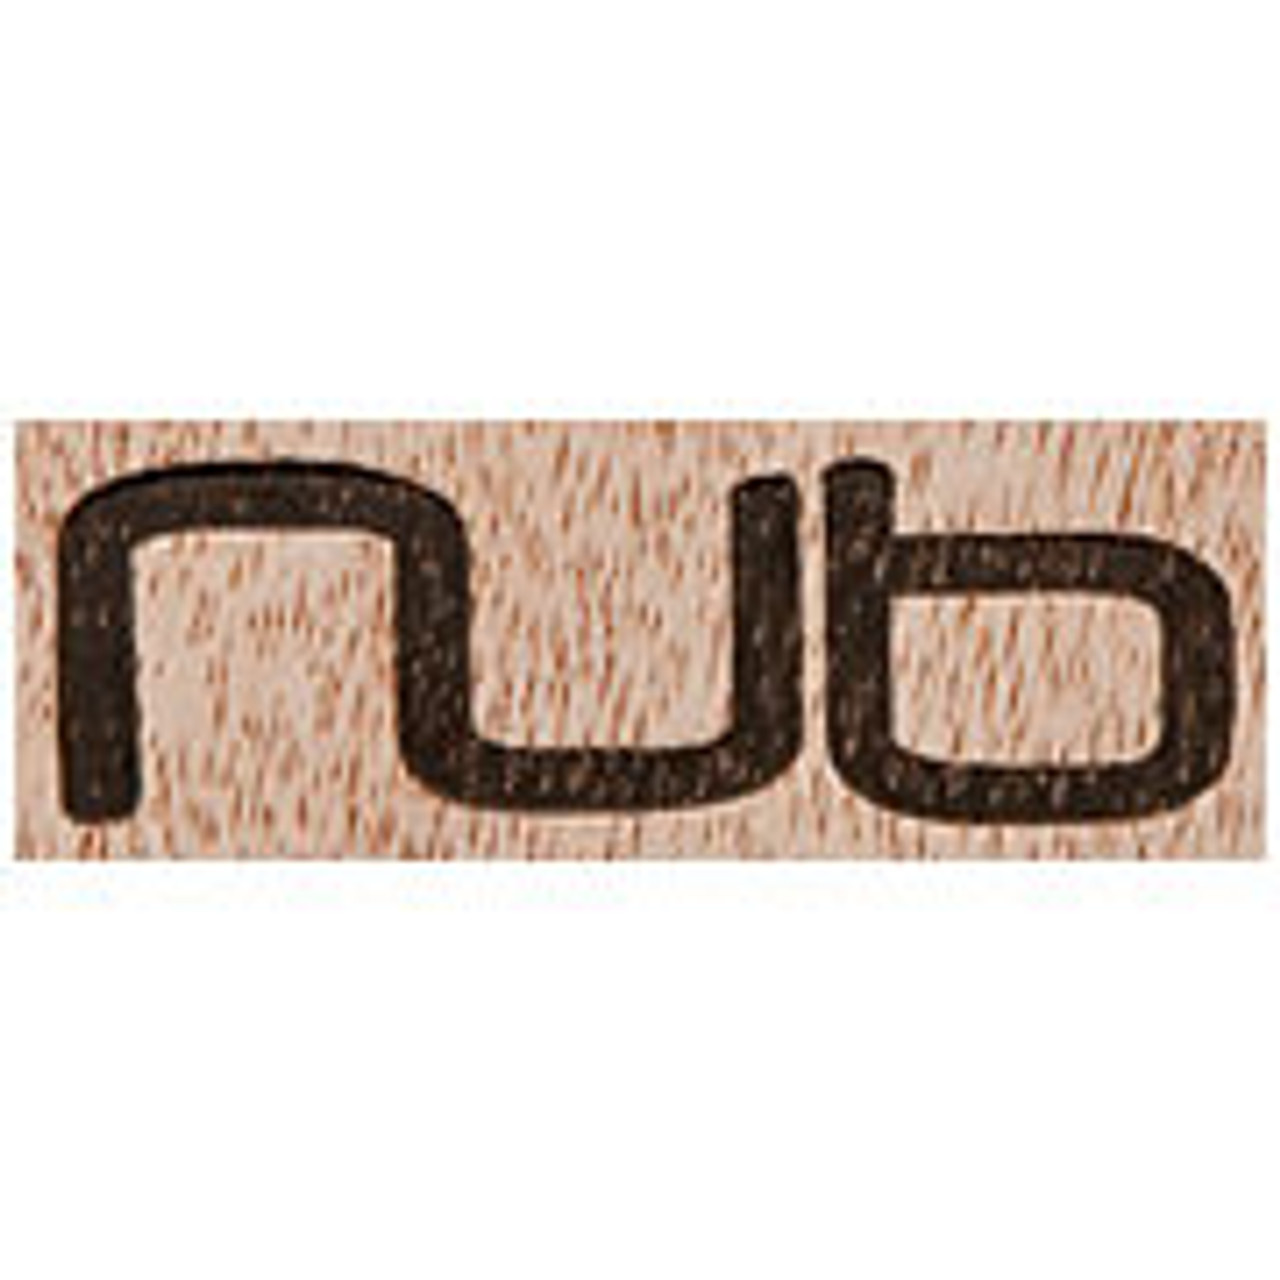 Nub Logo